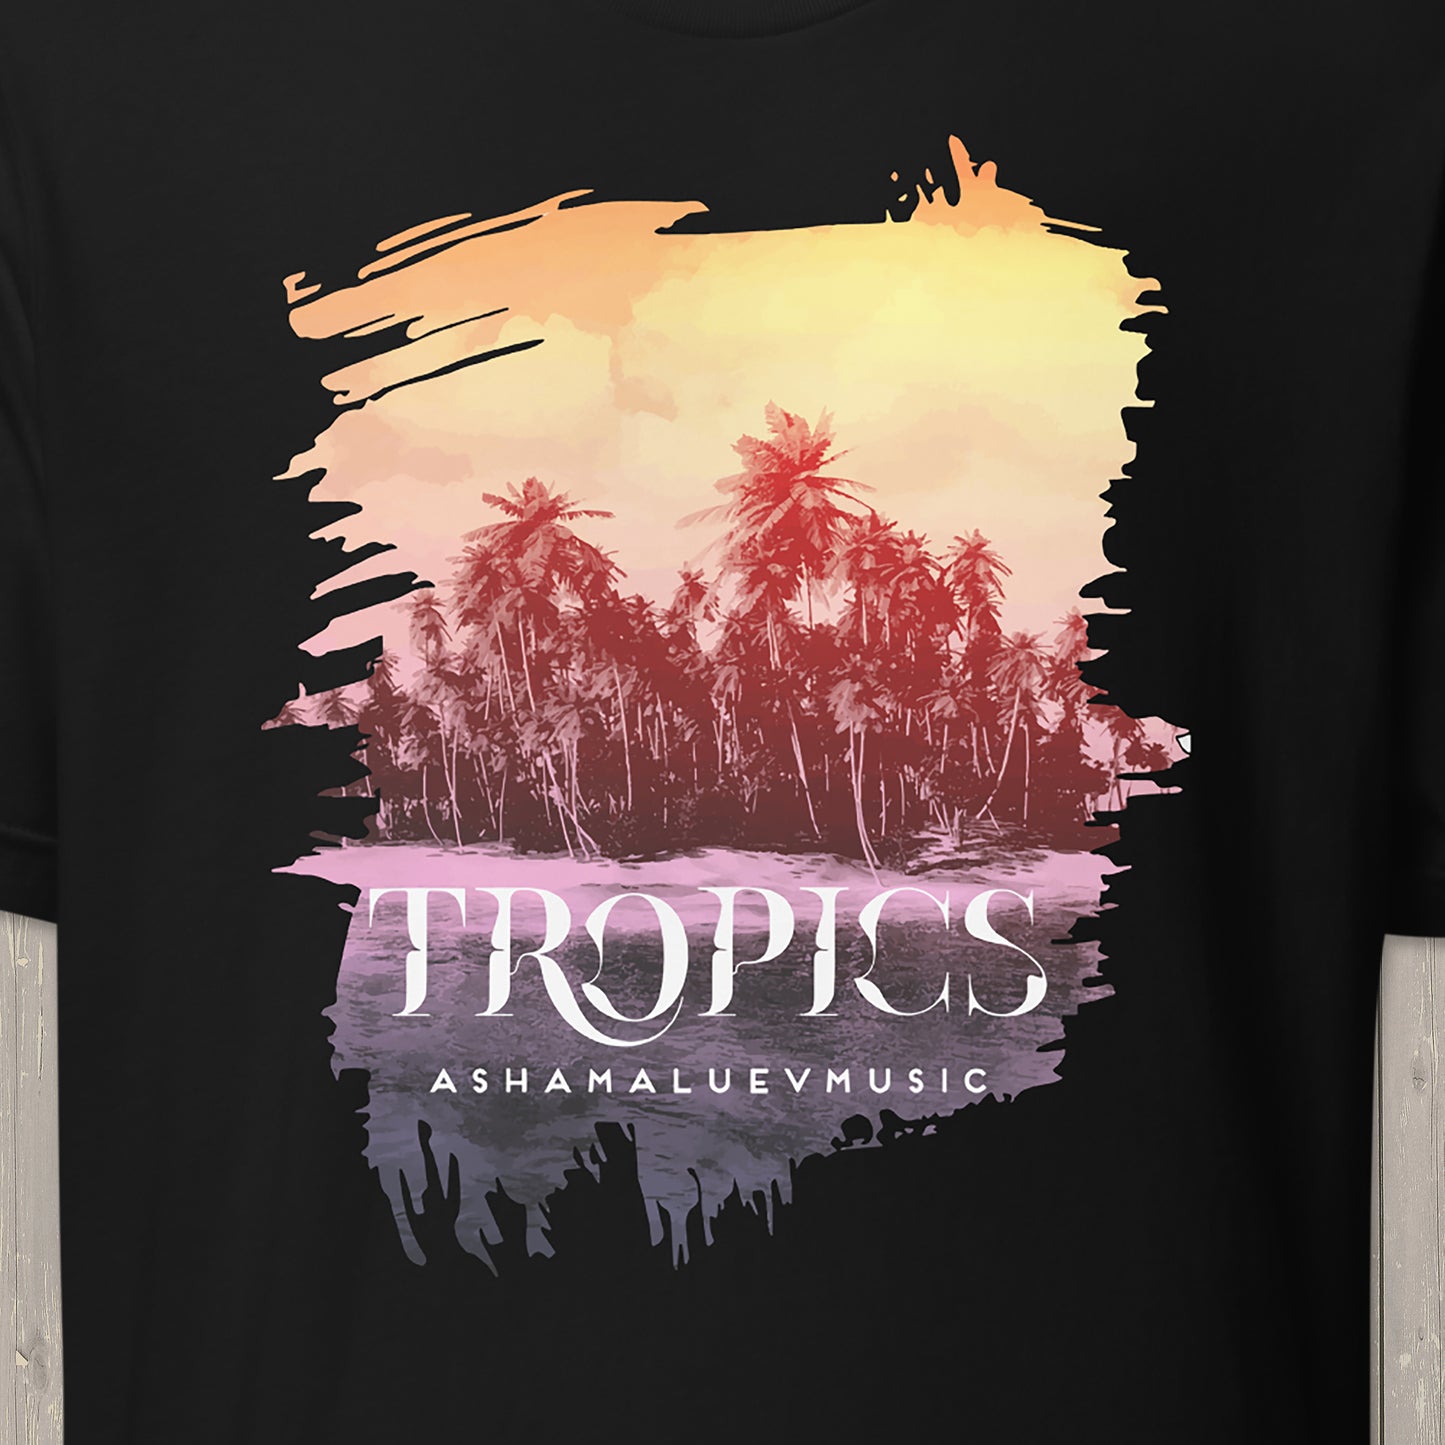 T-shirt "Tropics"